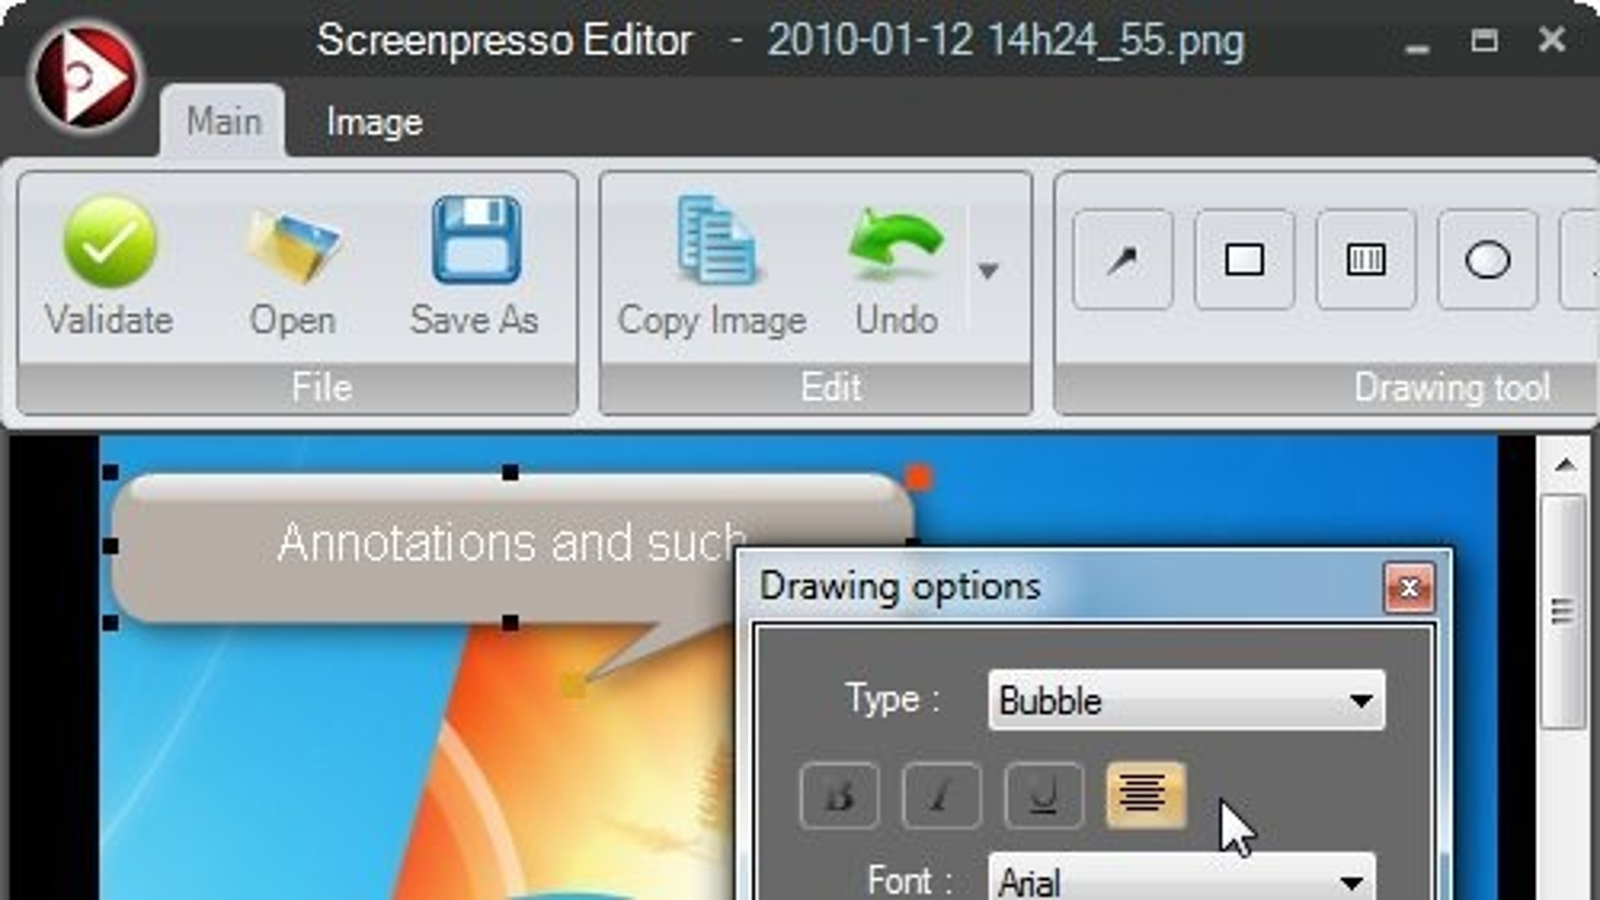 instal the last version for apple Screenpresso Pro 2.1.13